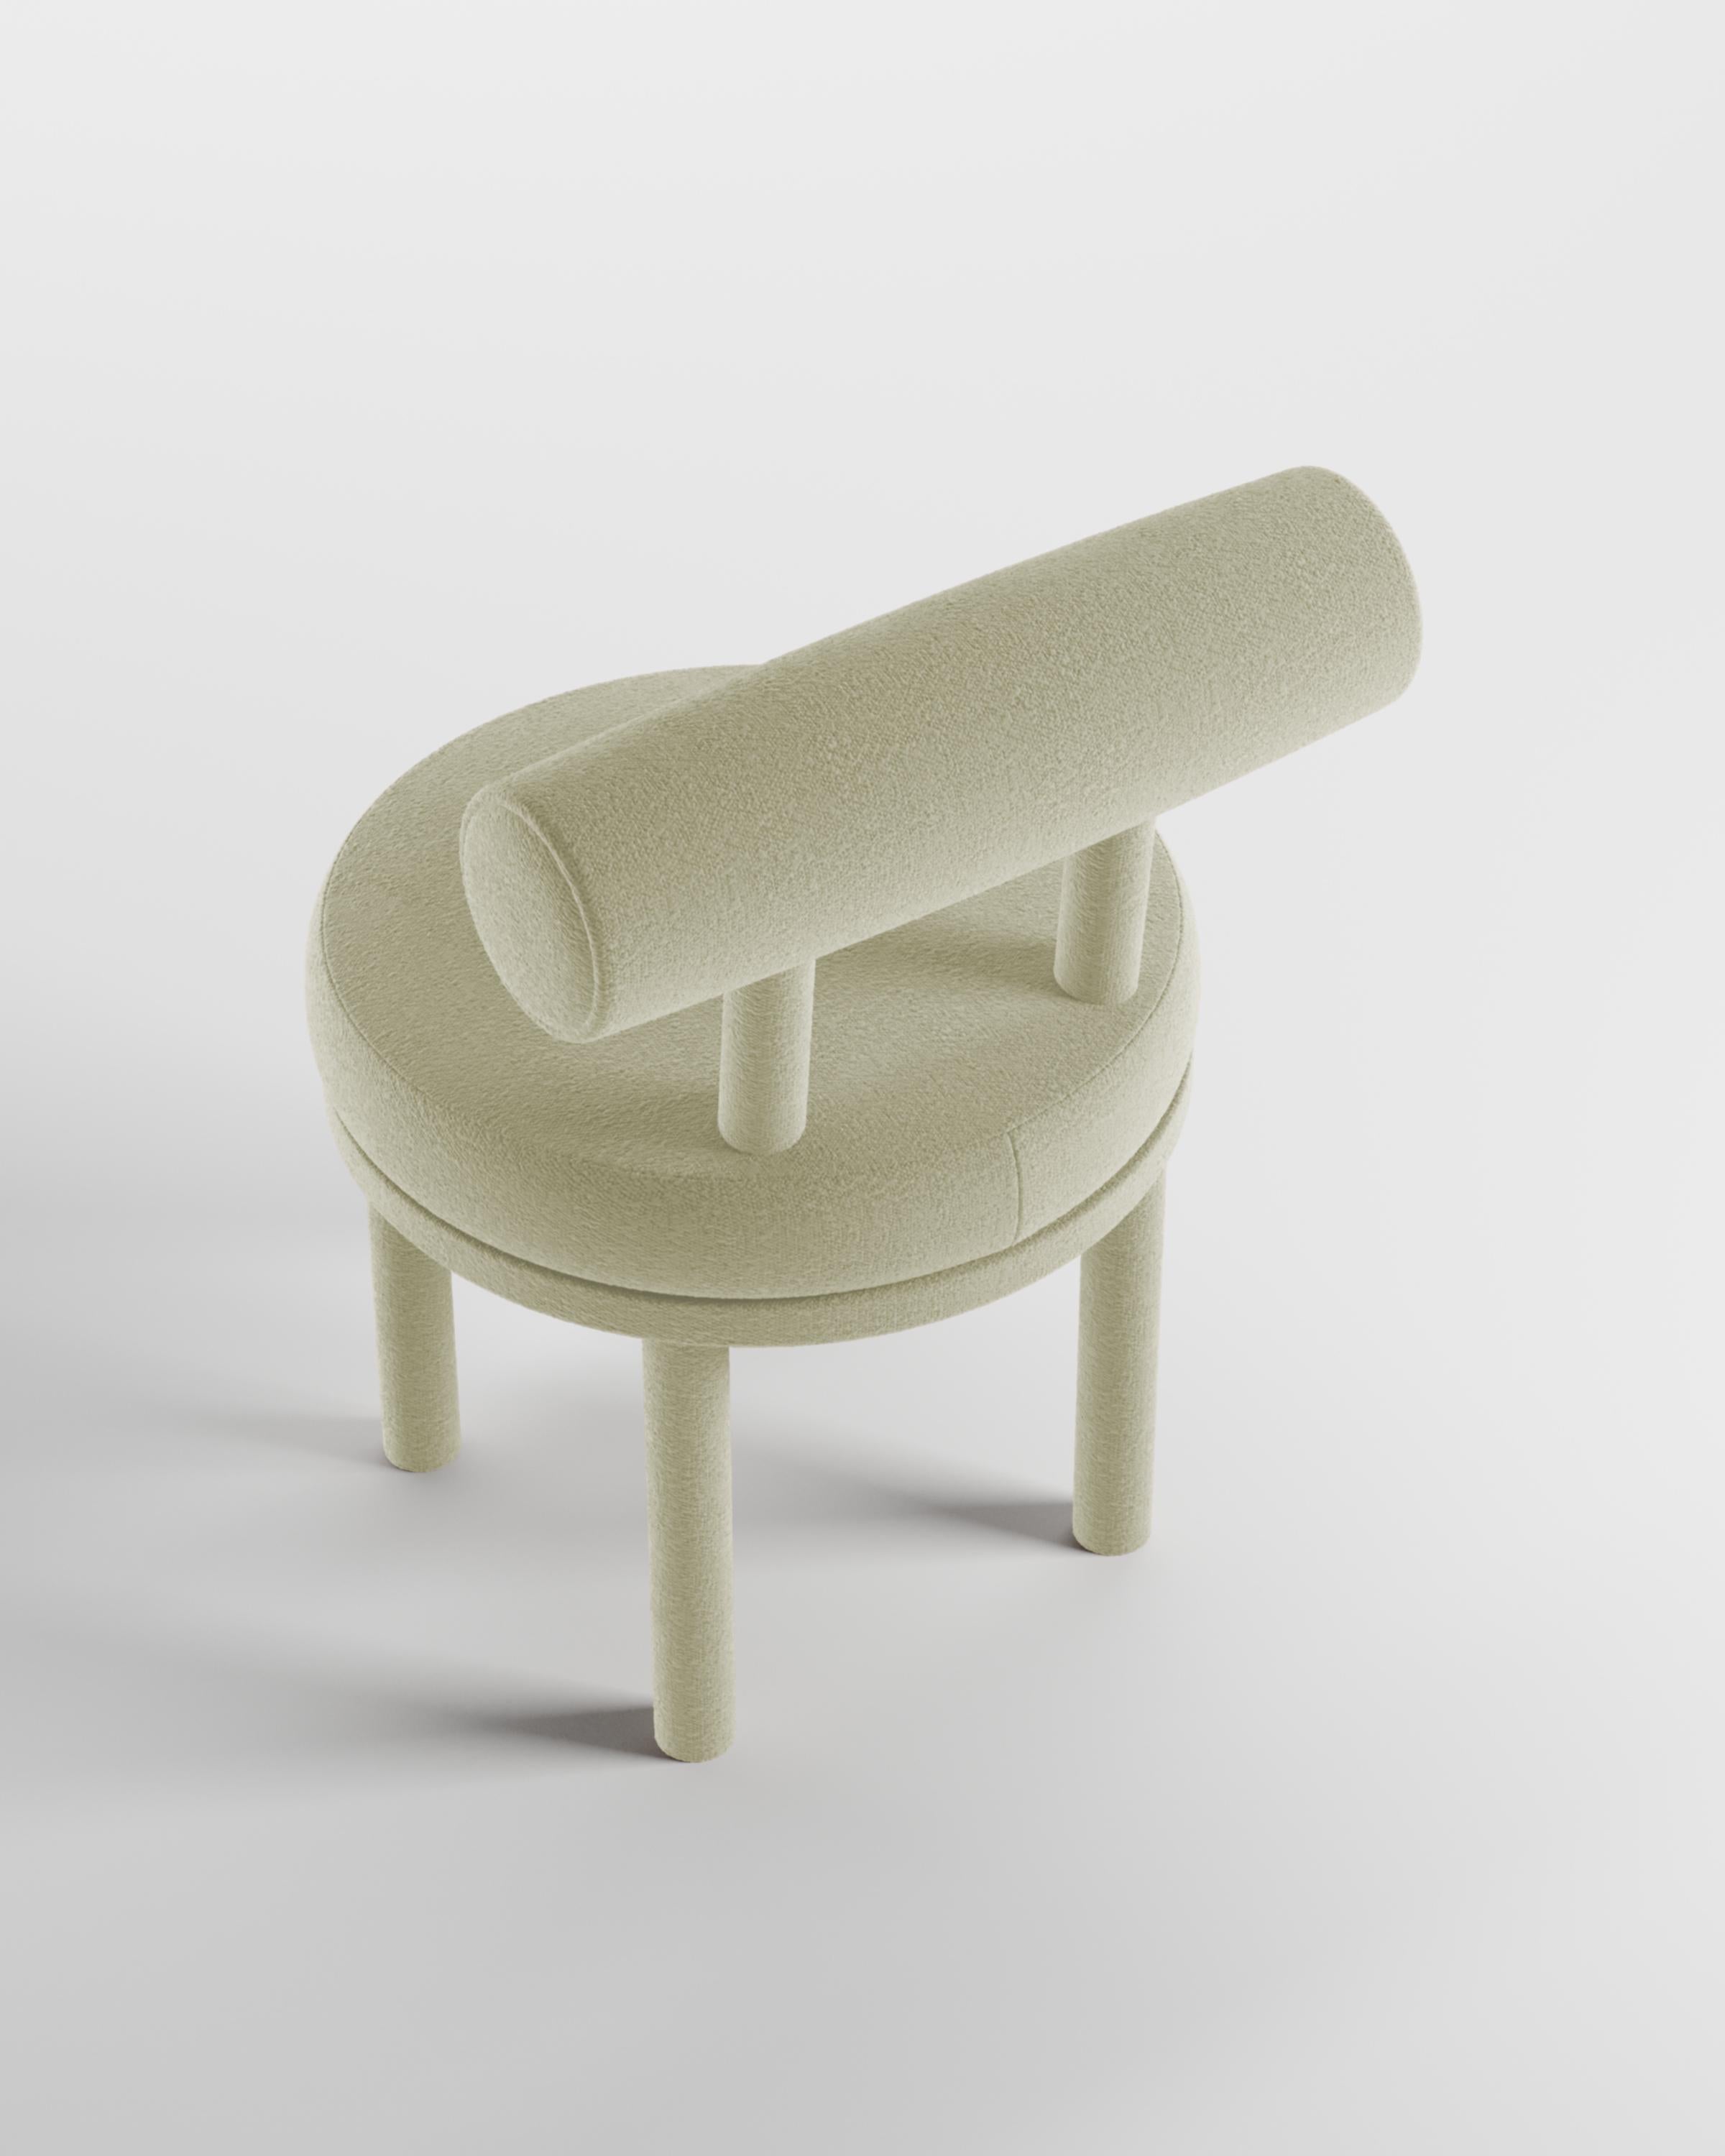 Une chaise qui allie les approches modernes et classiques du design.
Conçue pour épouser le corps, cette chaise durable et solide présente une structure de corps produite en bois massif.

Structure en bois de chêne massif et revêtement en tissu